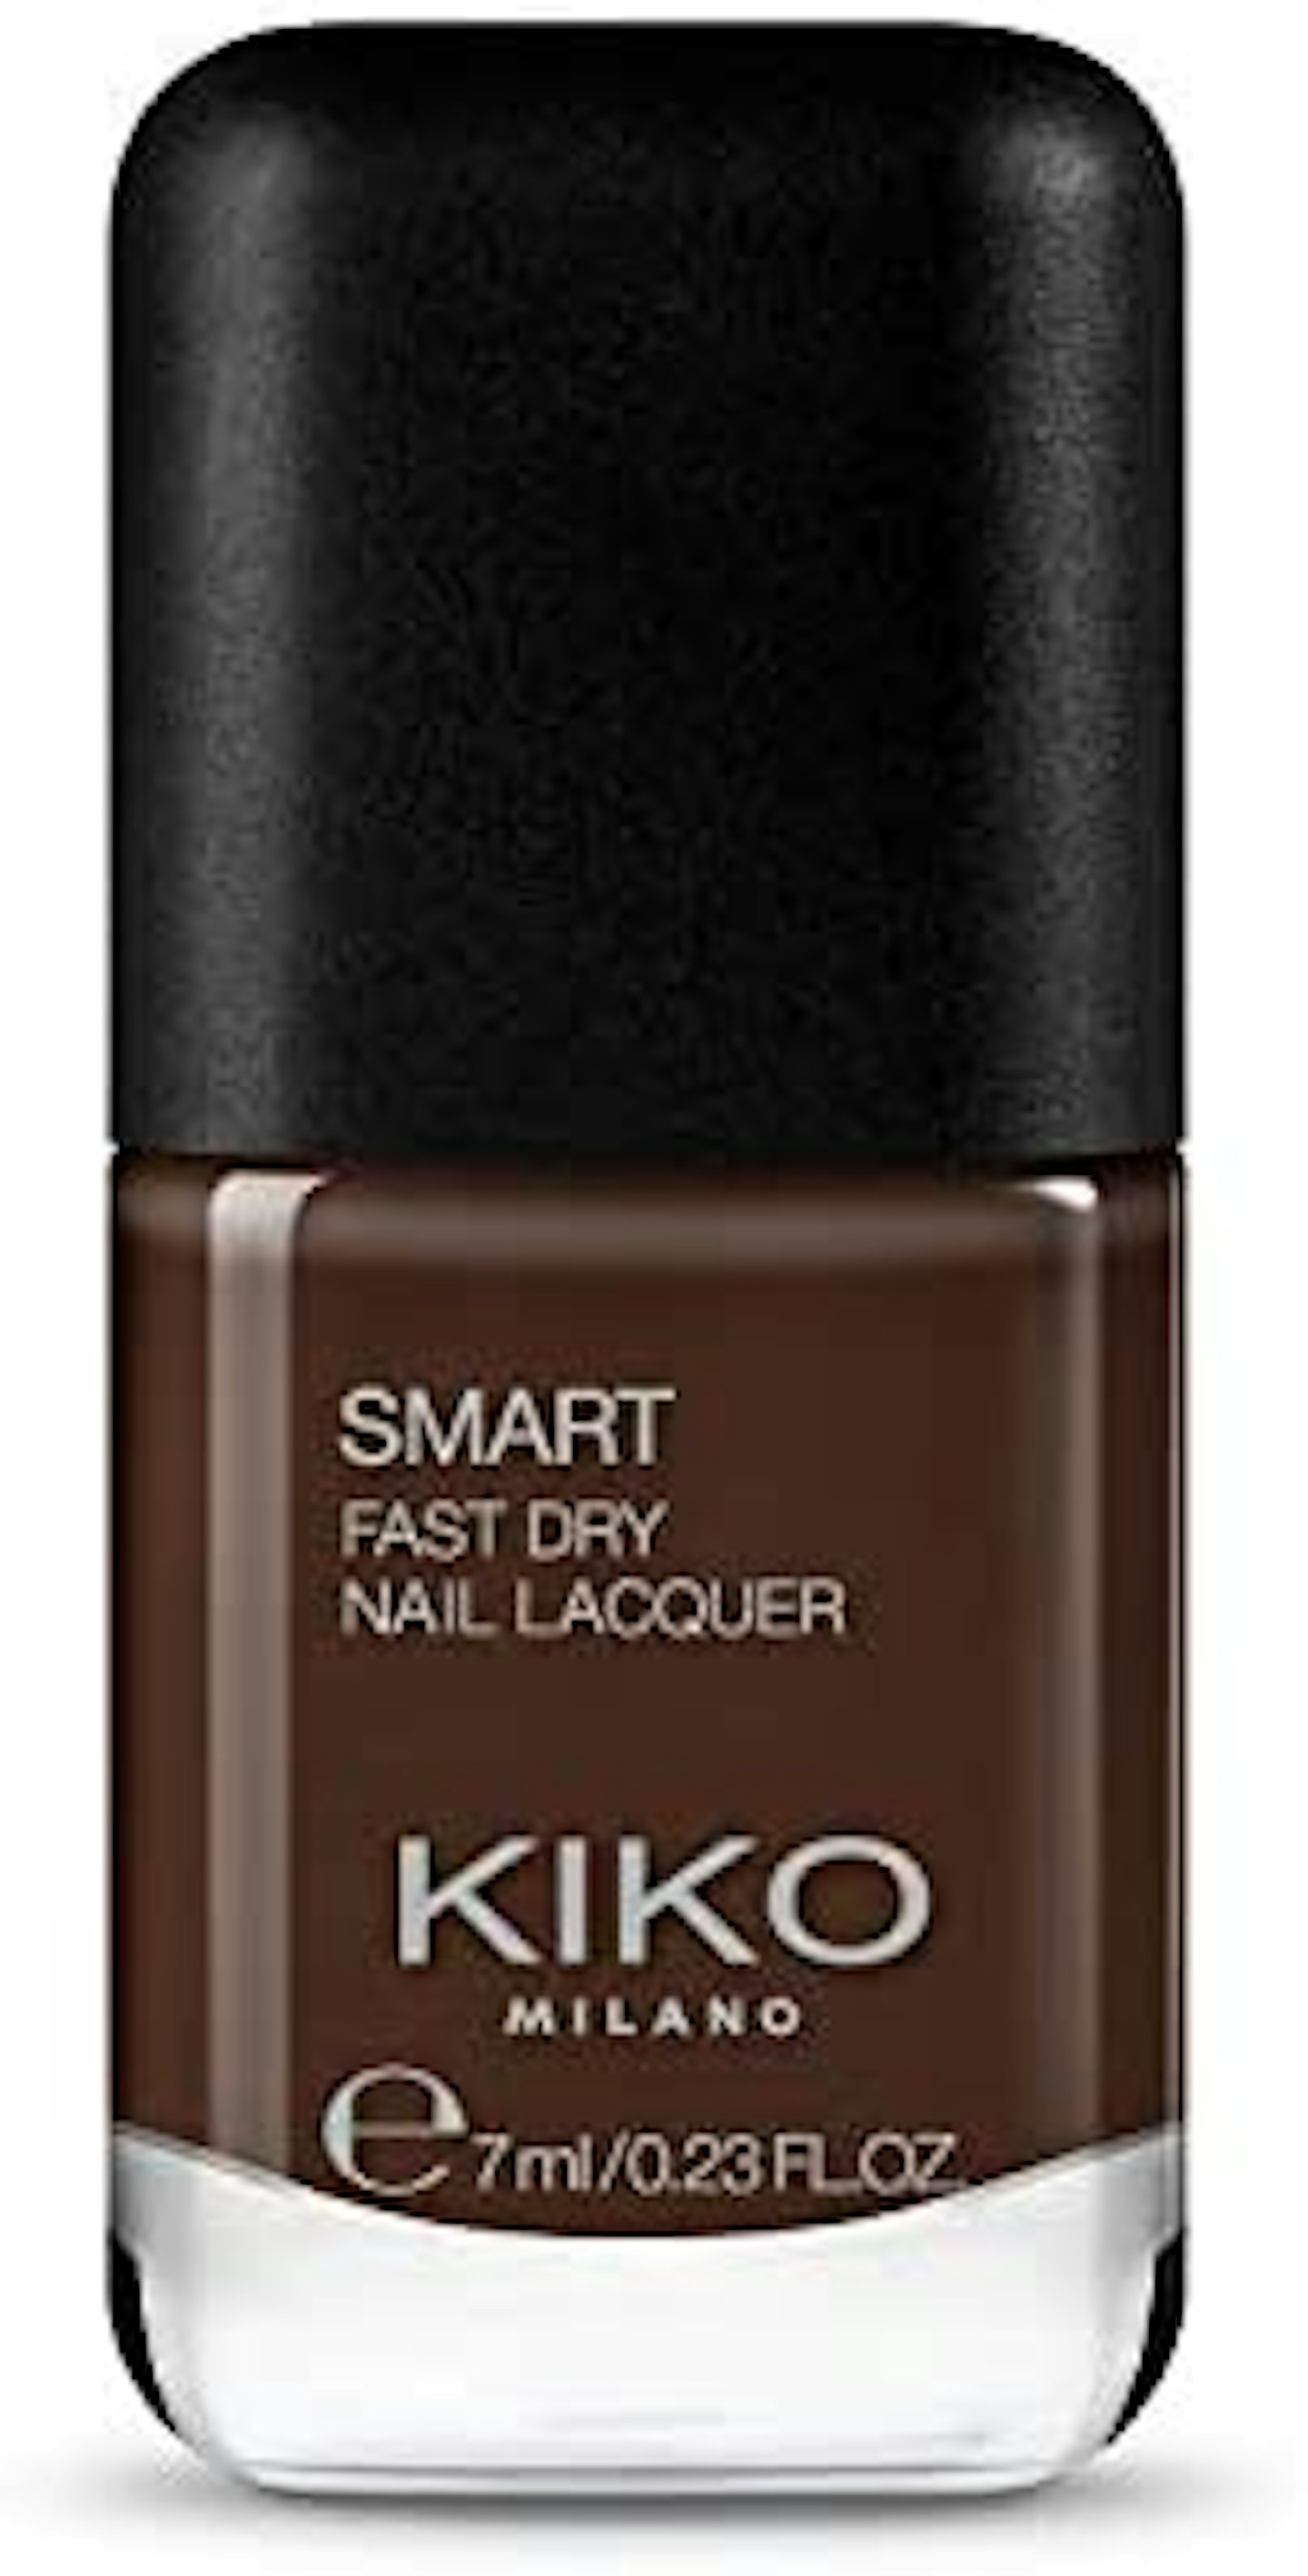 Kiko, Smart Nail Lacquer, £2.50